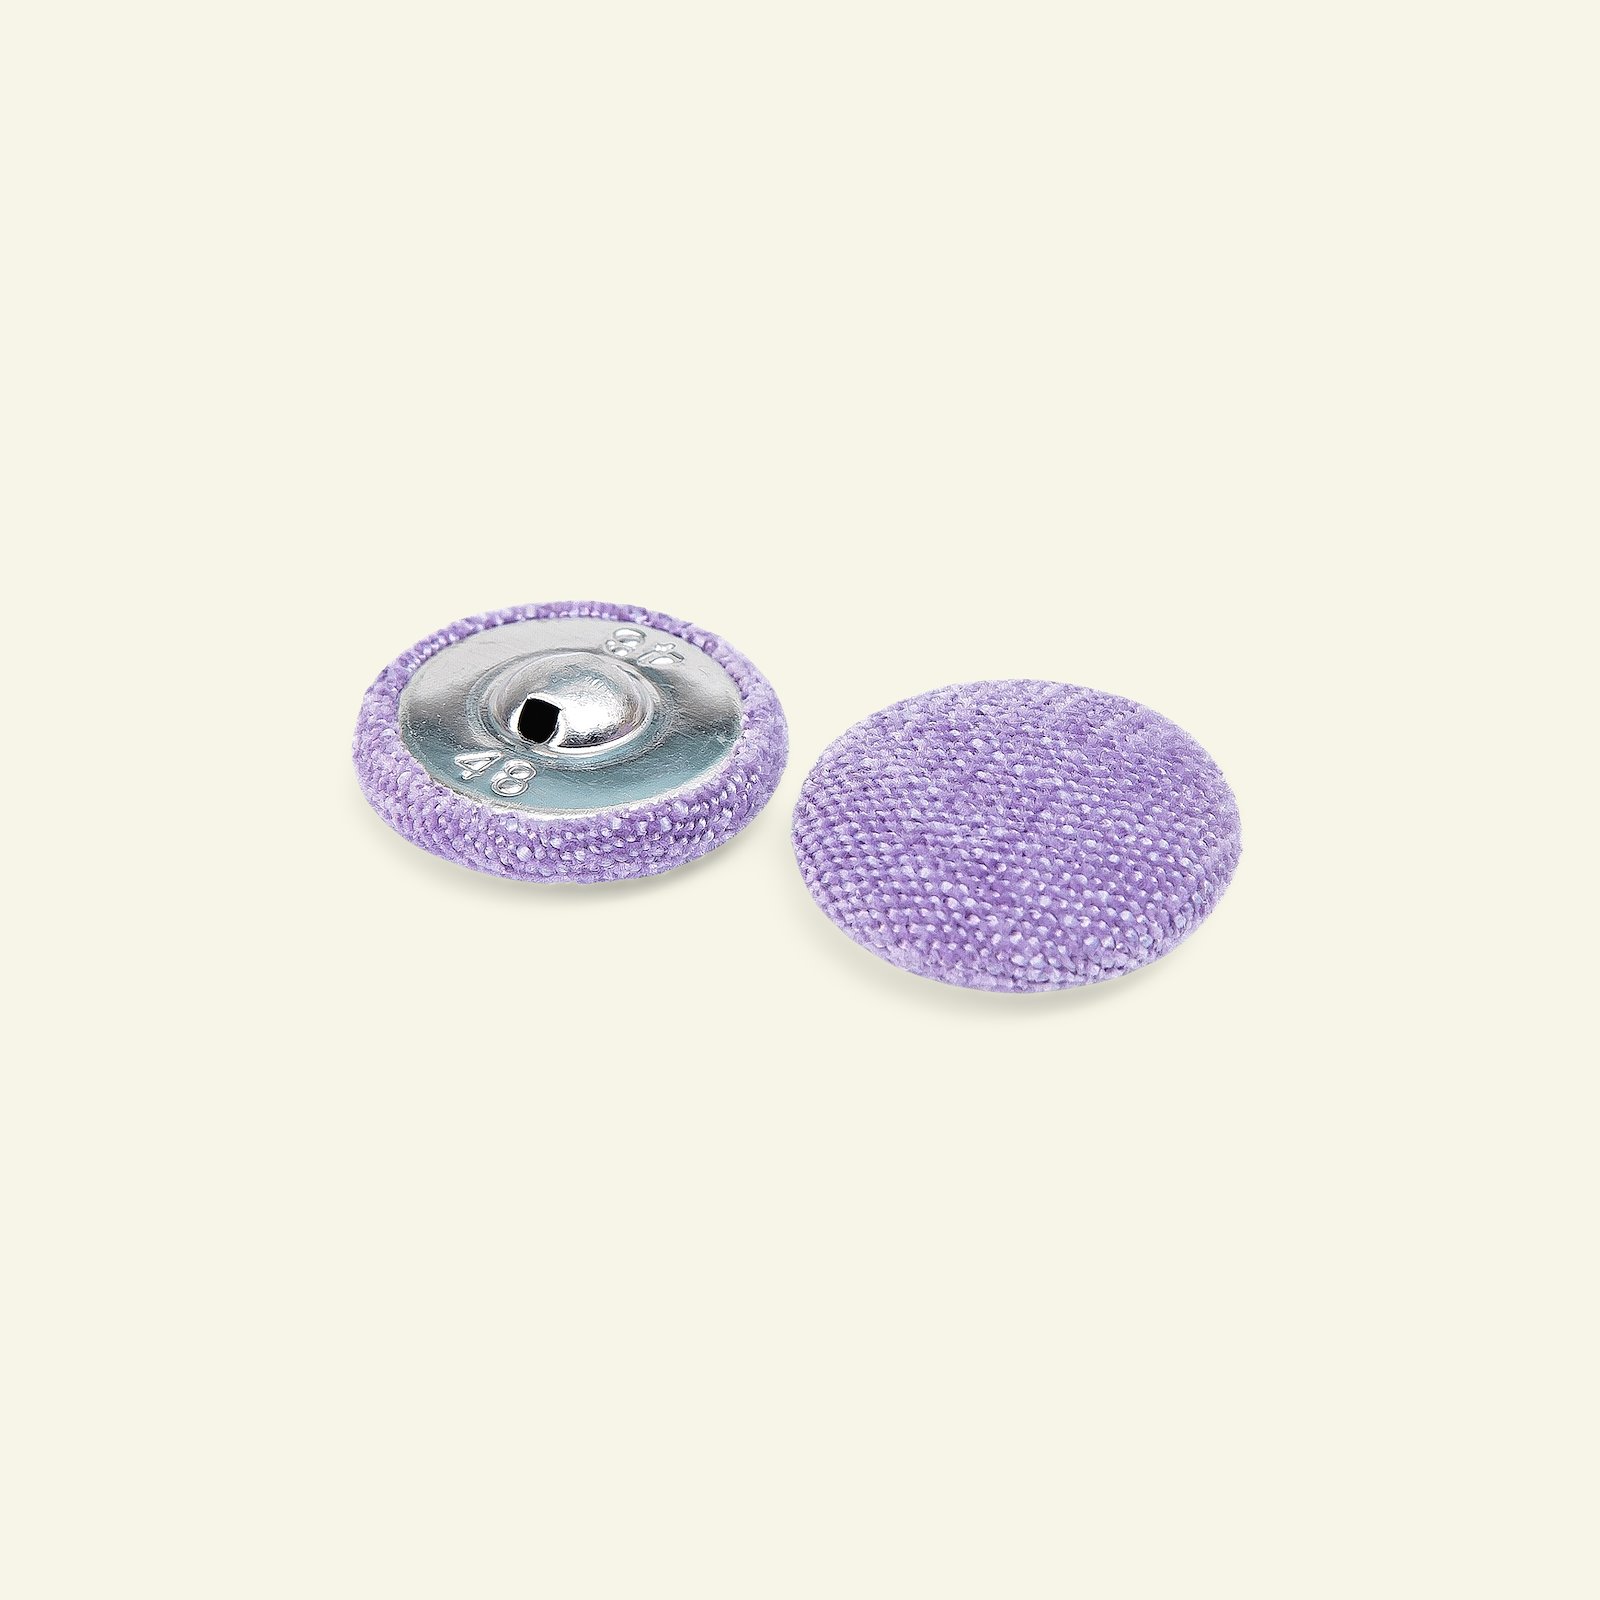 Shank button chenille 30mm lavender 2pcs 40528_pack